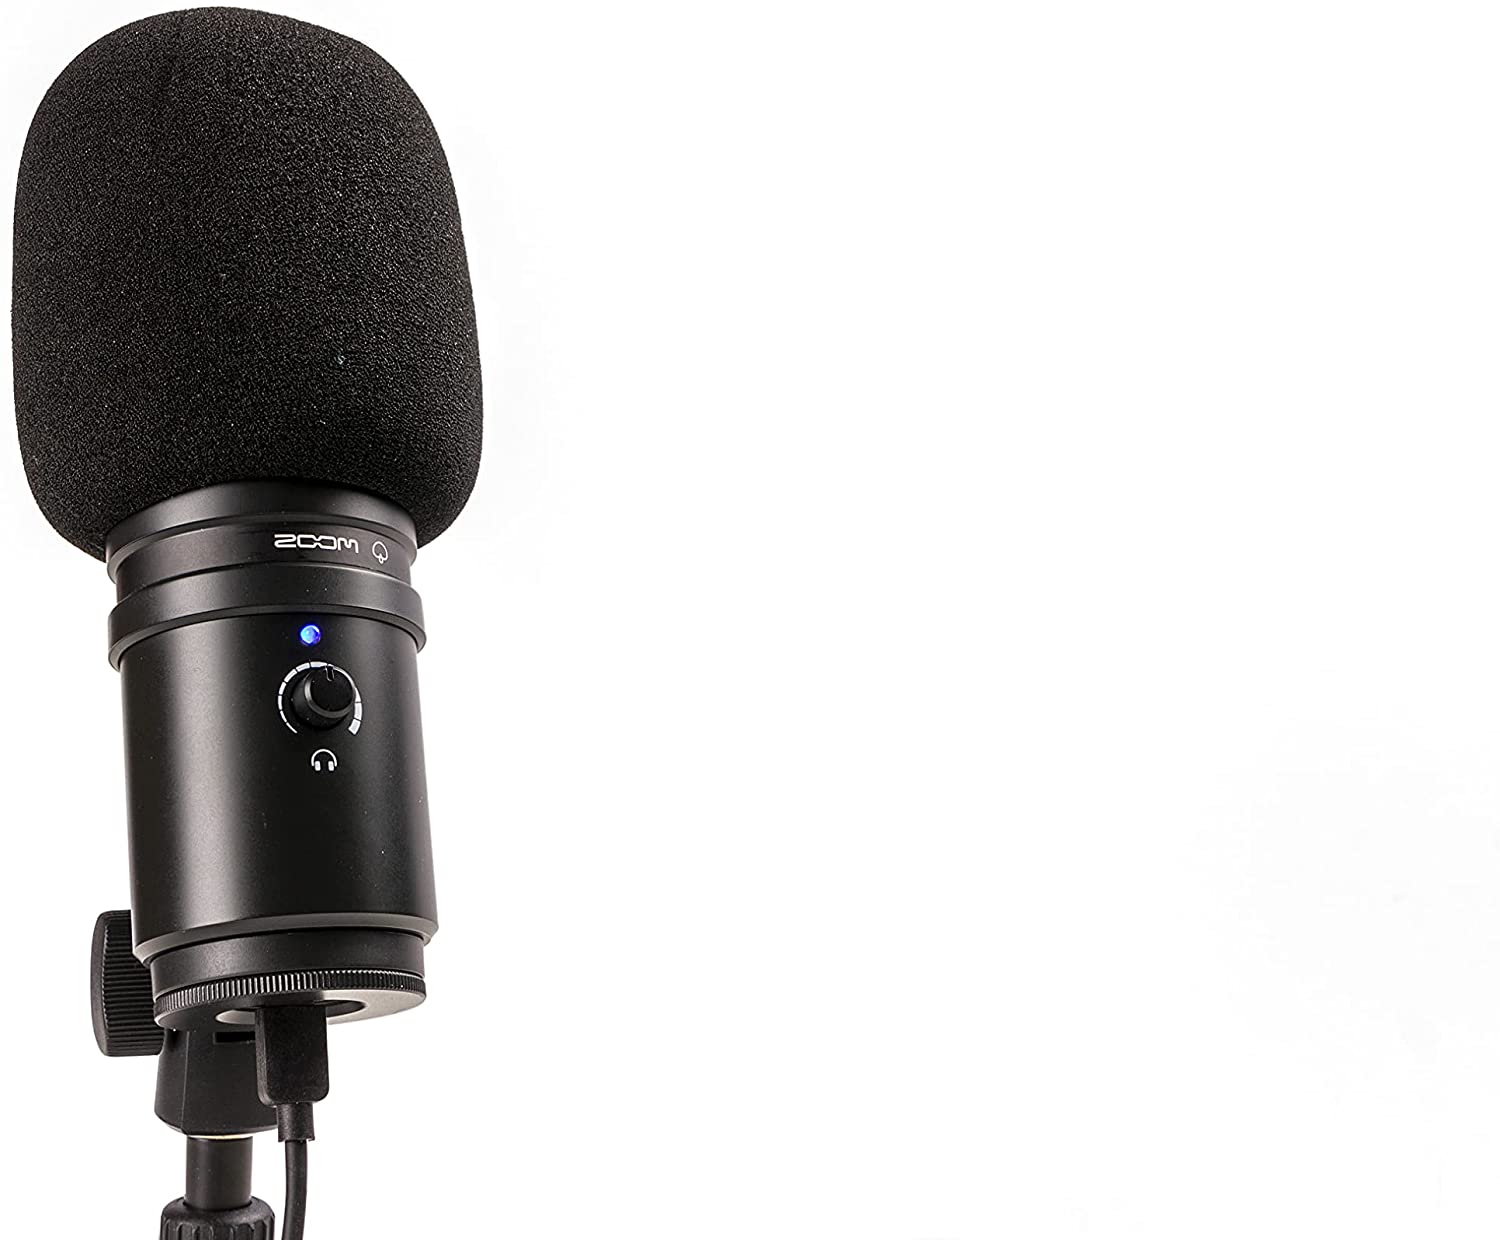 Kit de Microfone com Fone USB Zoom ZUM-2 para Podcast